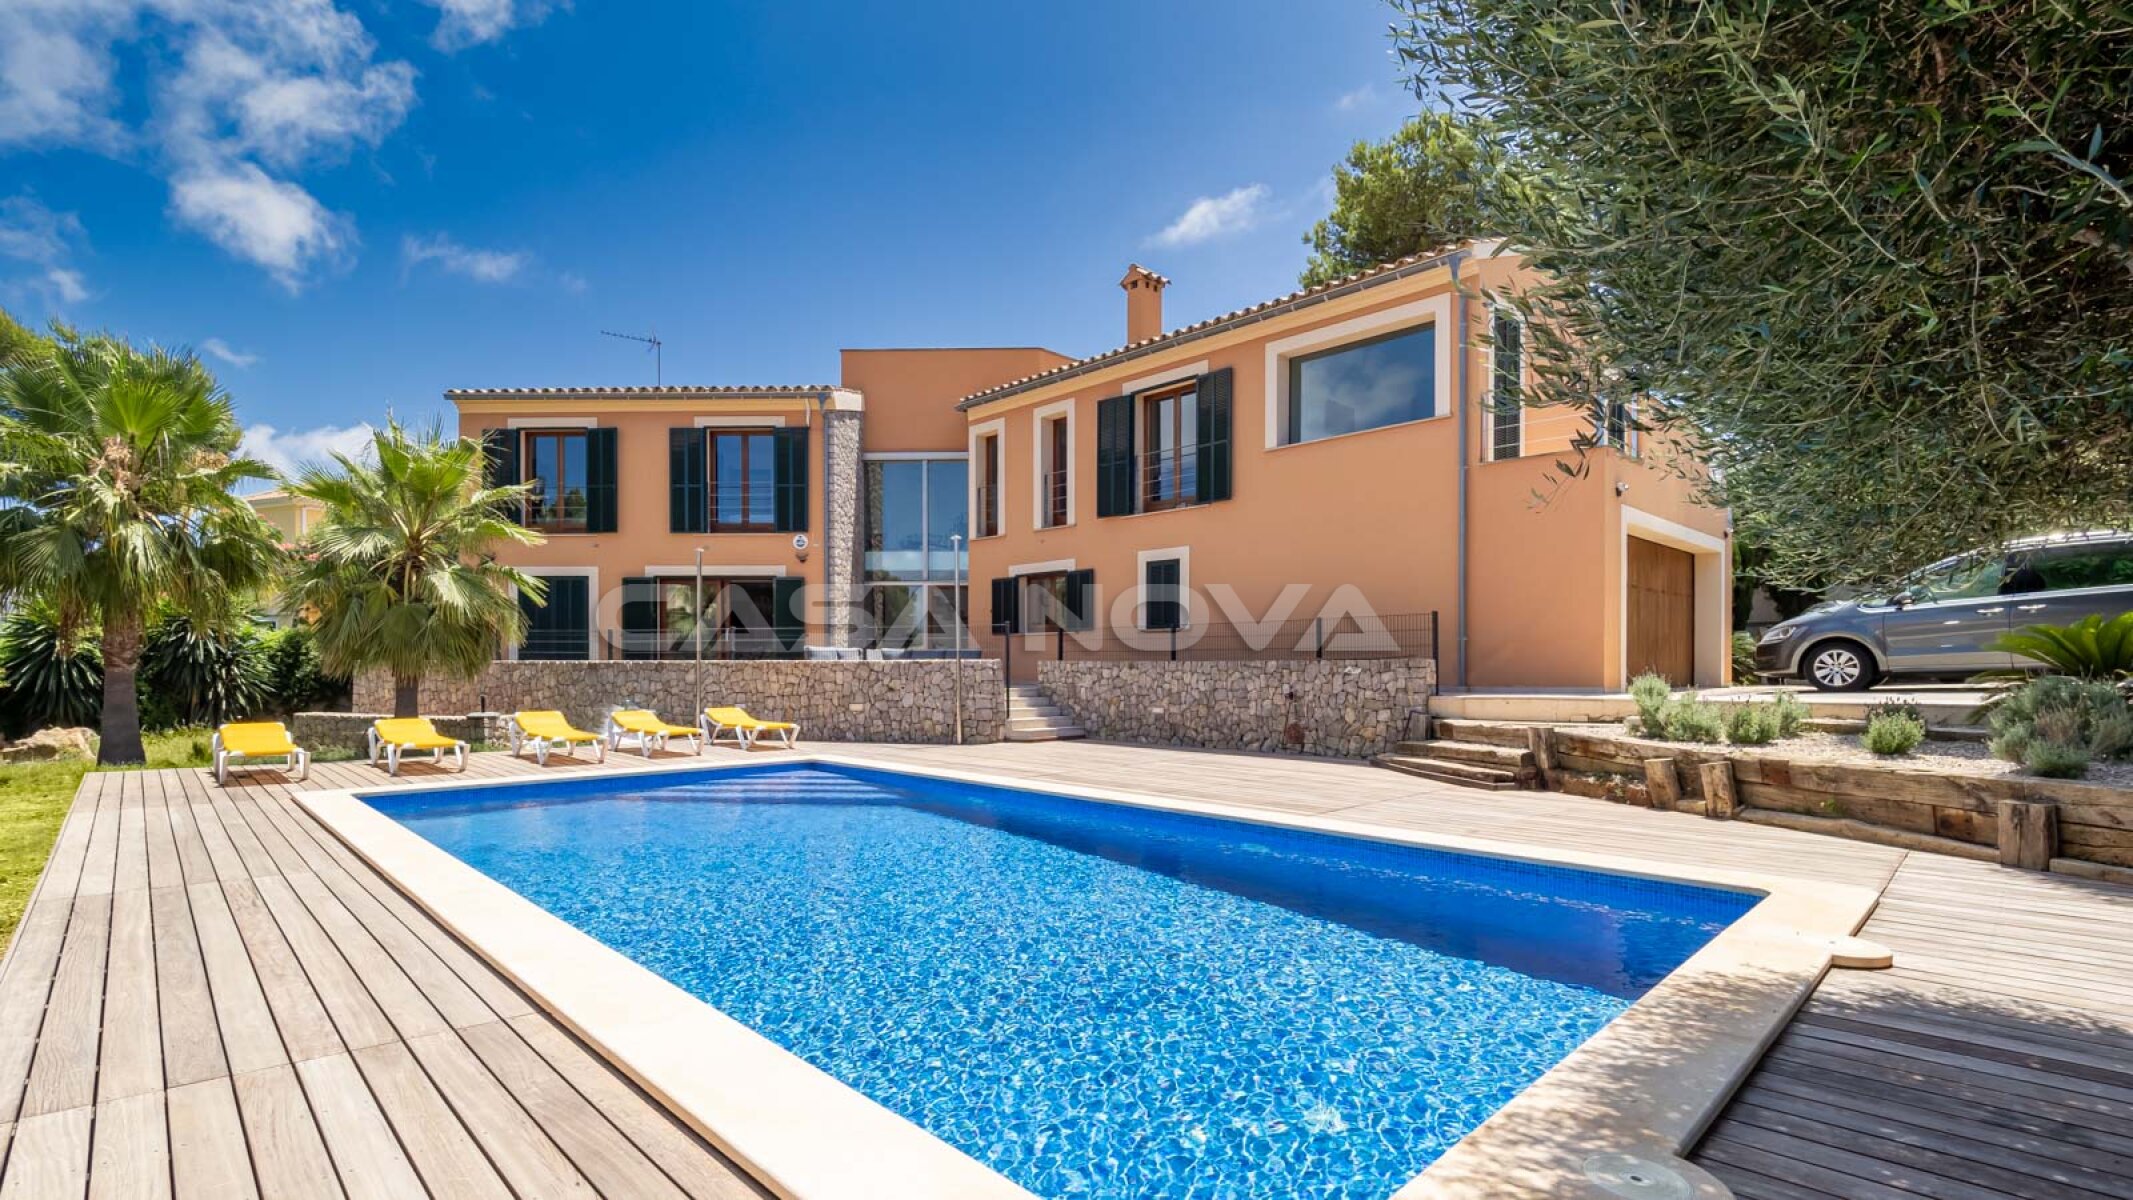 Impressive Mallorca villa with pool in quiet location